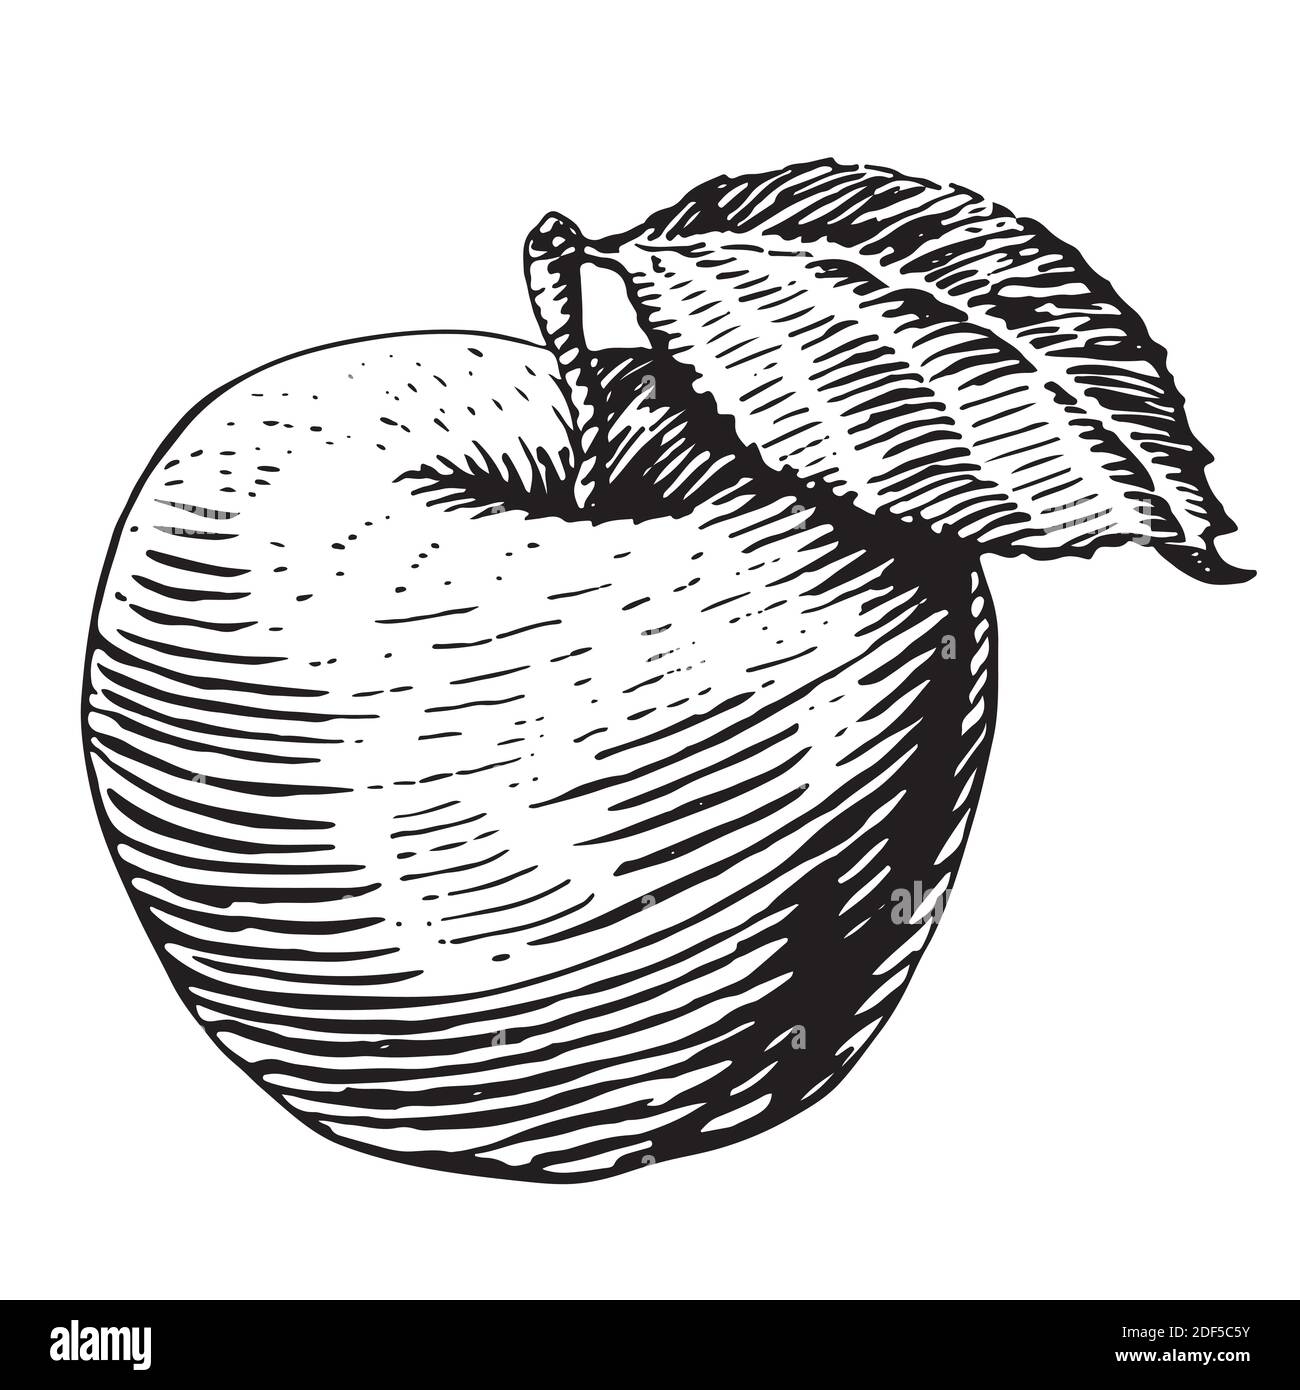 Frischer Apfel. Handgezeichnete Skizze Stil eco Food Vektor Illustration. Isolierte Zeichnung auf weißem Hintergrund. Stock Vektor